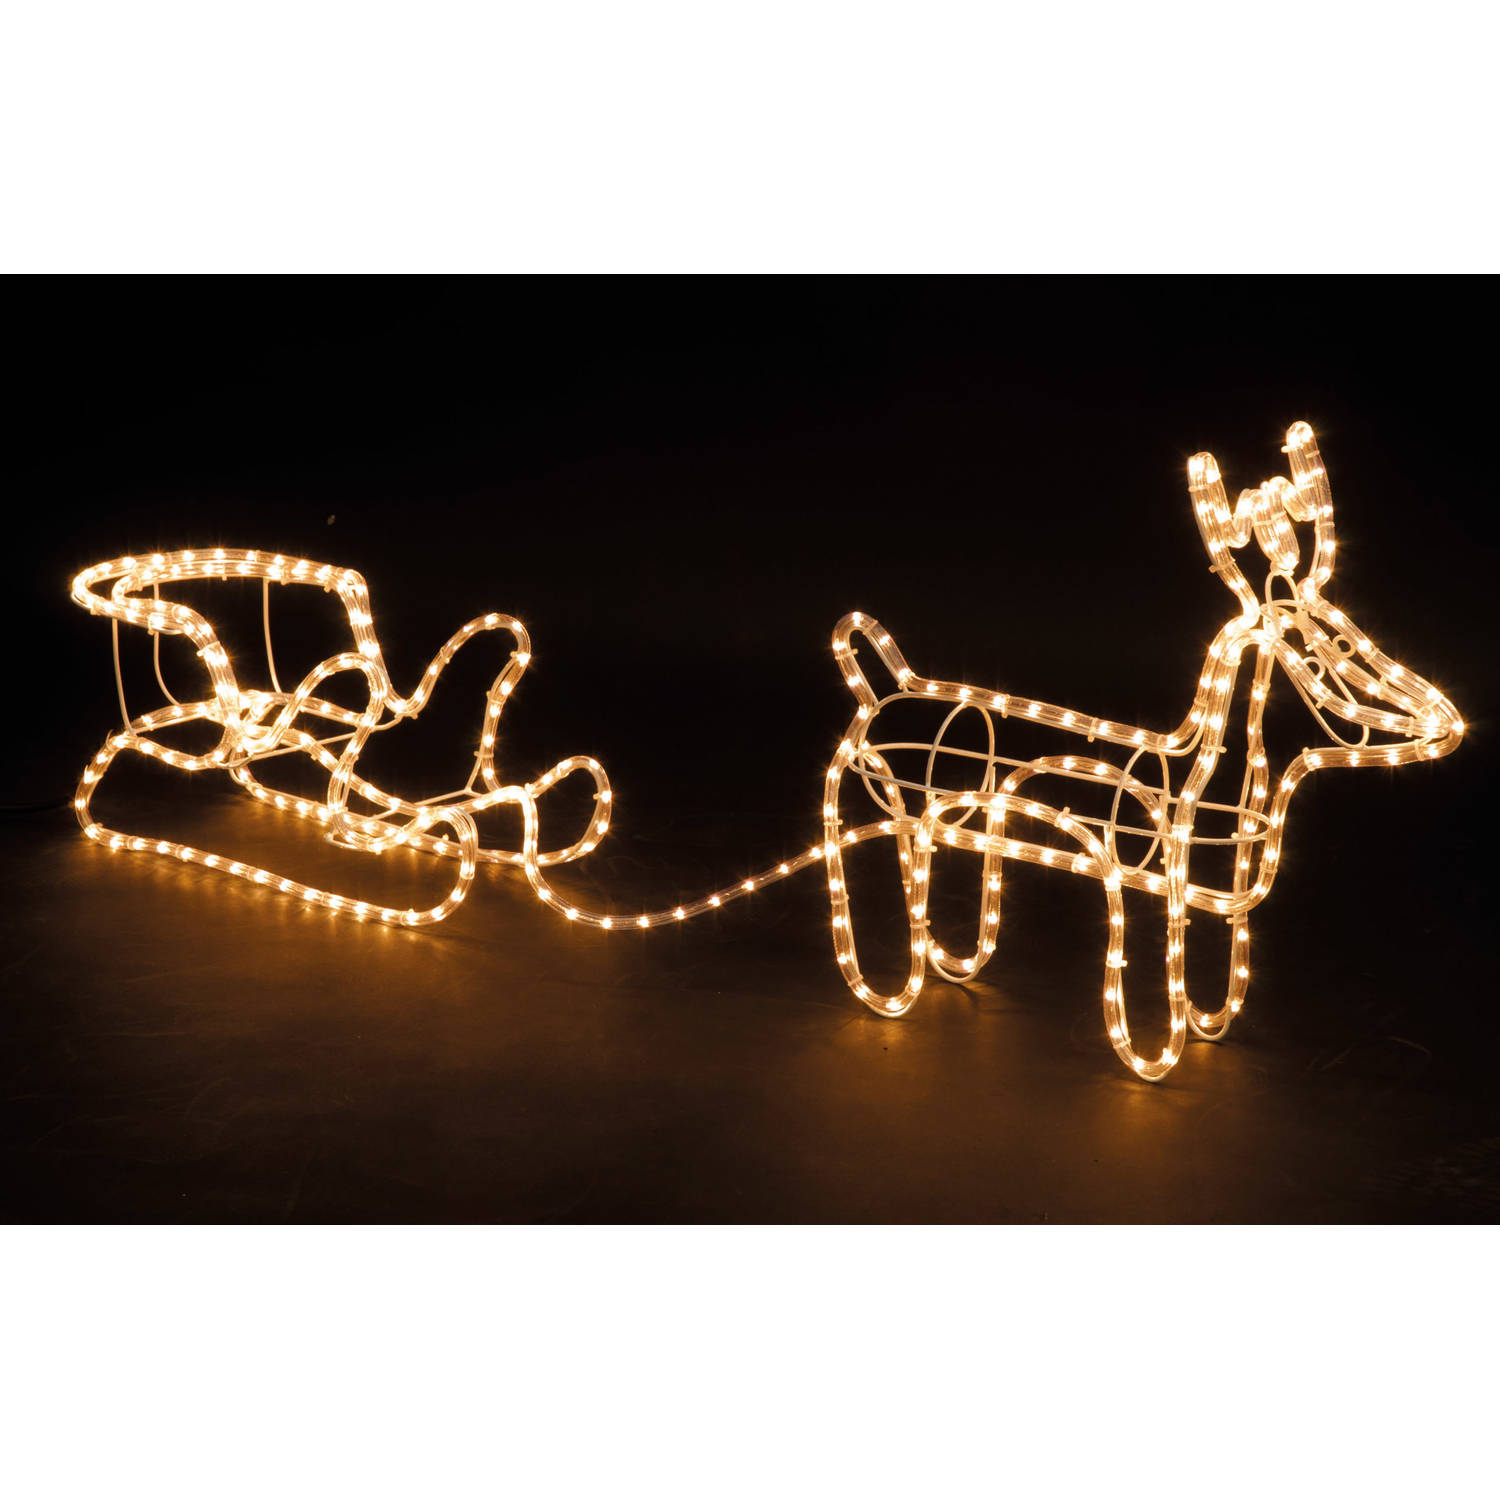 MaxxHome Kerstverlichting - Rendier met Slee - Warm Wit lichtslang - 504 lampjes - 208x28cm